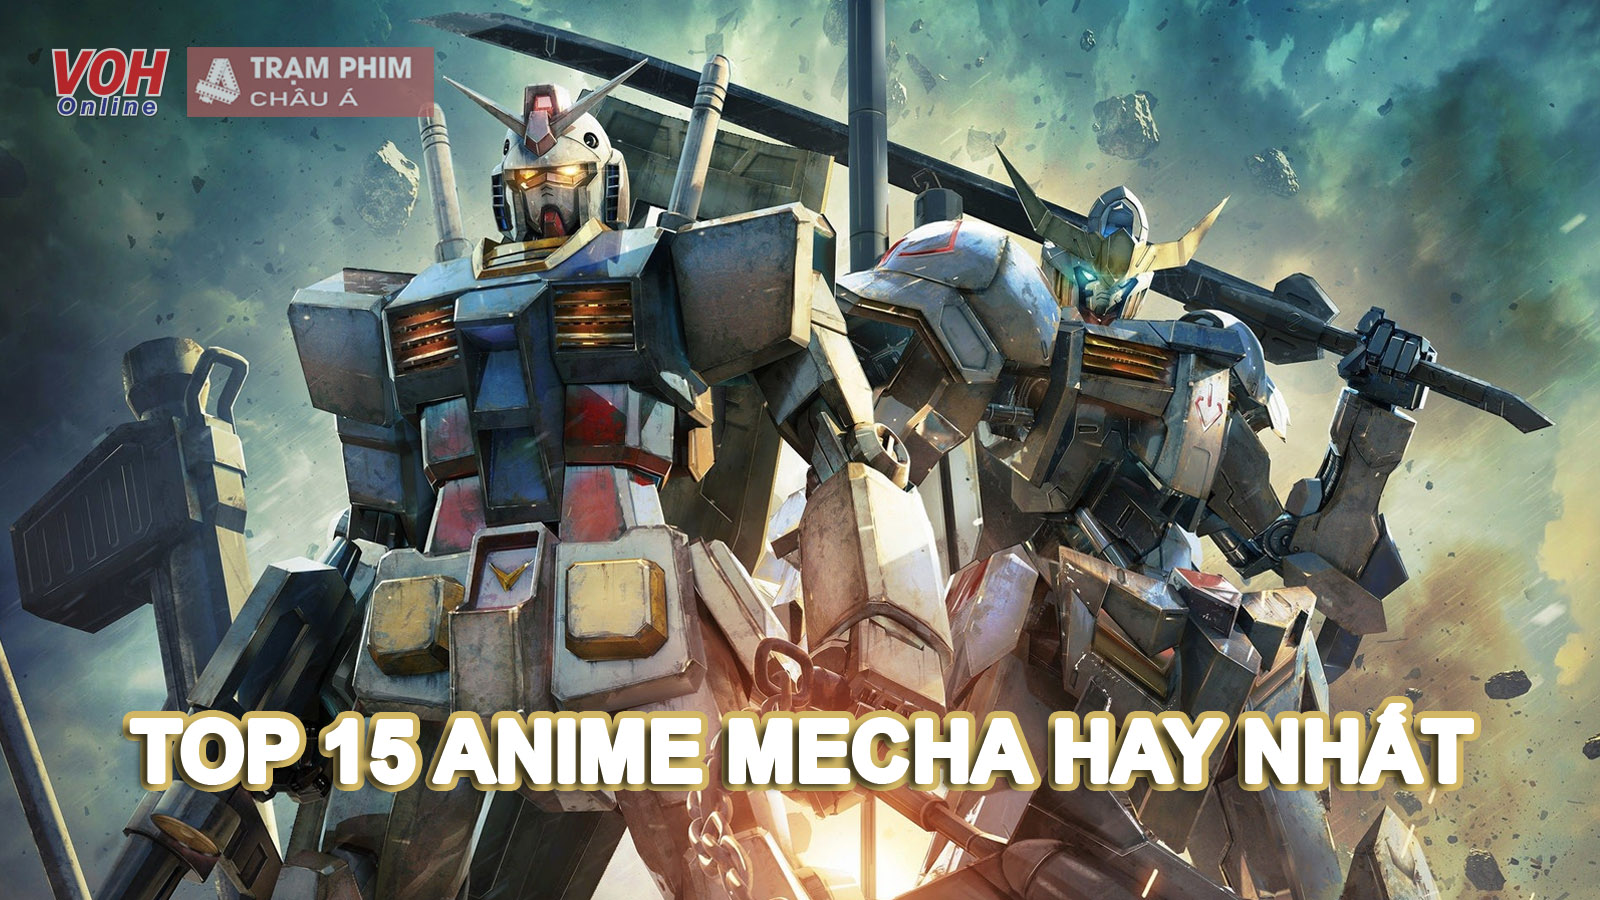 Top 15 bộ anime Robot (Mecha) hay nhất mọi thời đại không thể bỏ qua